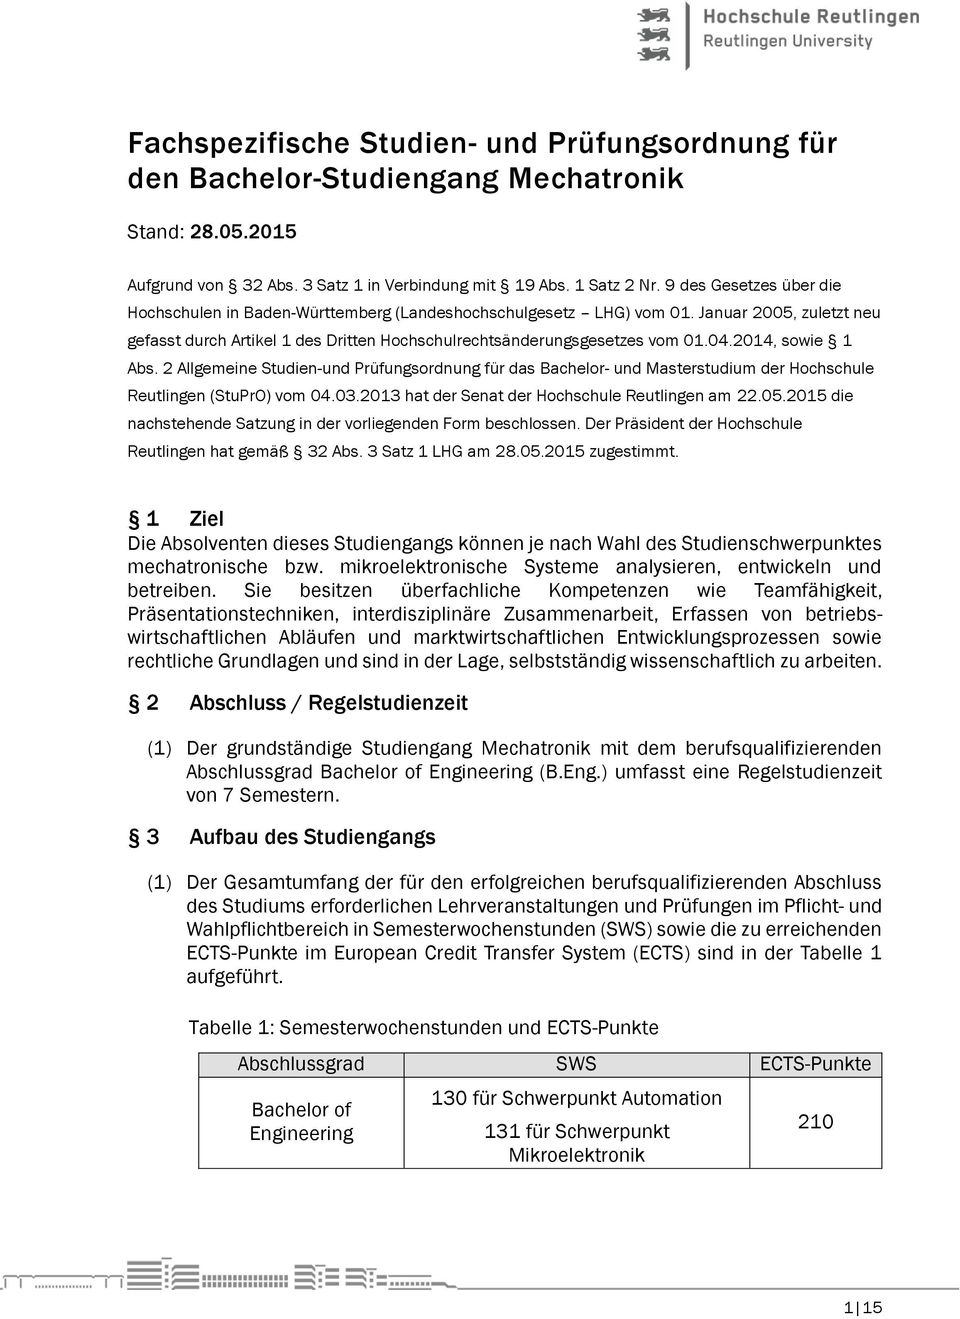 2014, sowie 1 Abs. 2 Allgemeine Studien-und Prüfungsordnung für das Bachelor- und Masterstudium der Hochschule Reutlingen (StuPrO) vom 04.03.2013 hat der Senat der Hochschule Reutlingen am 22.05.